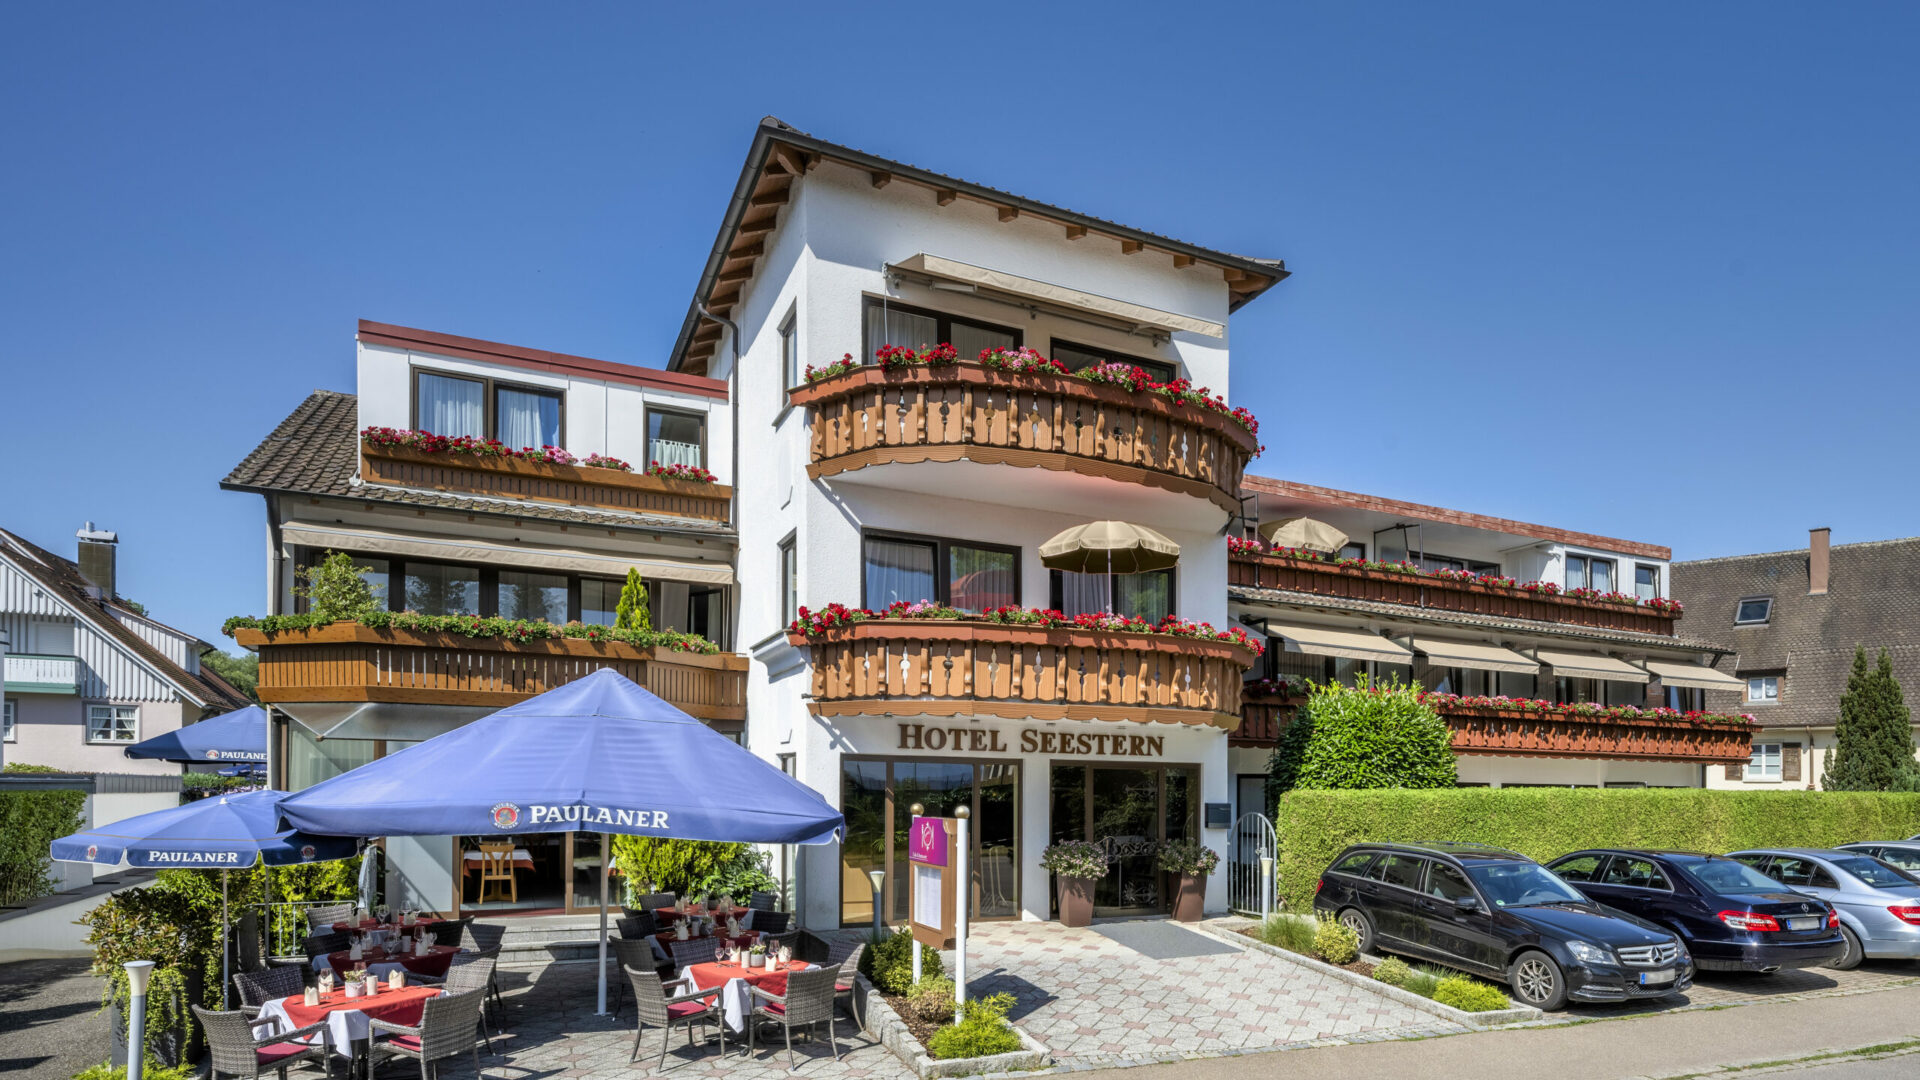 Hotel Seestern, Wasserburg, Bodensee